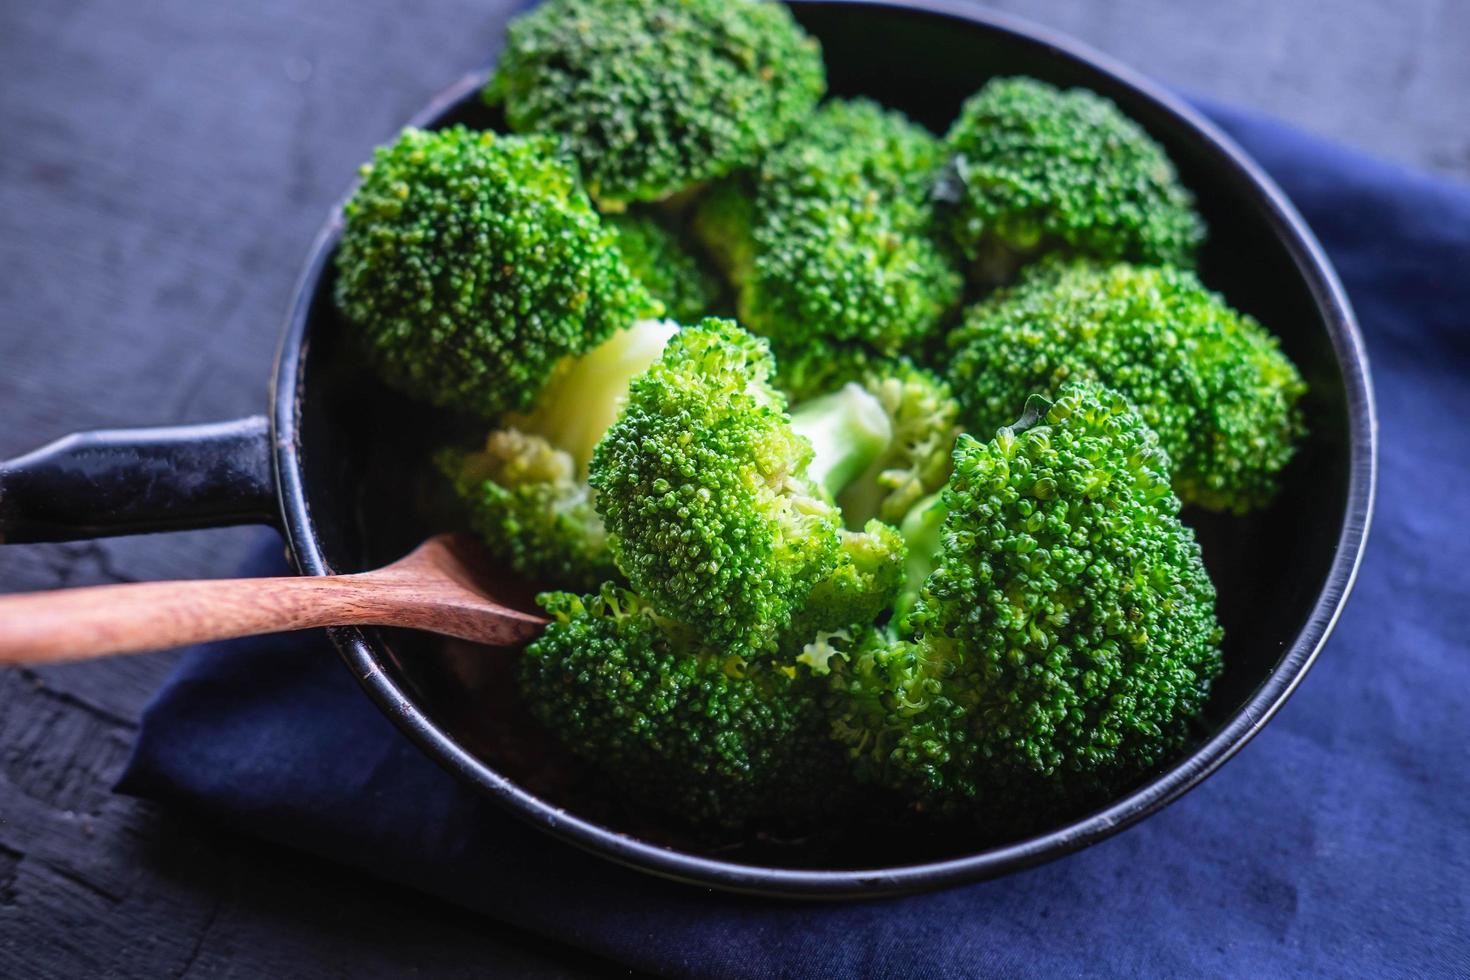 kochen Sie frisches Brokkoli-Gemüse Biolebensmittel foto